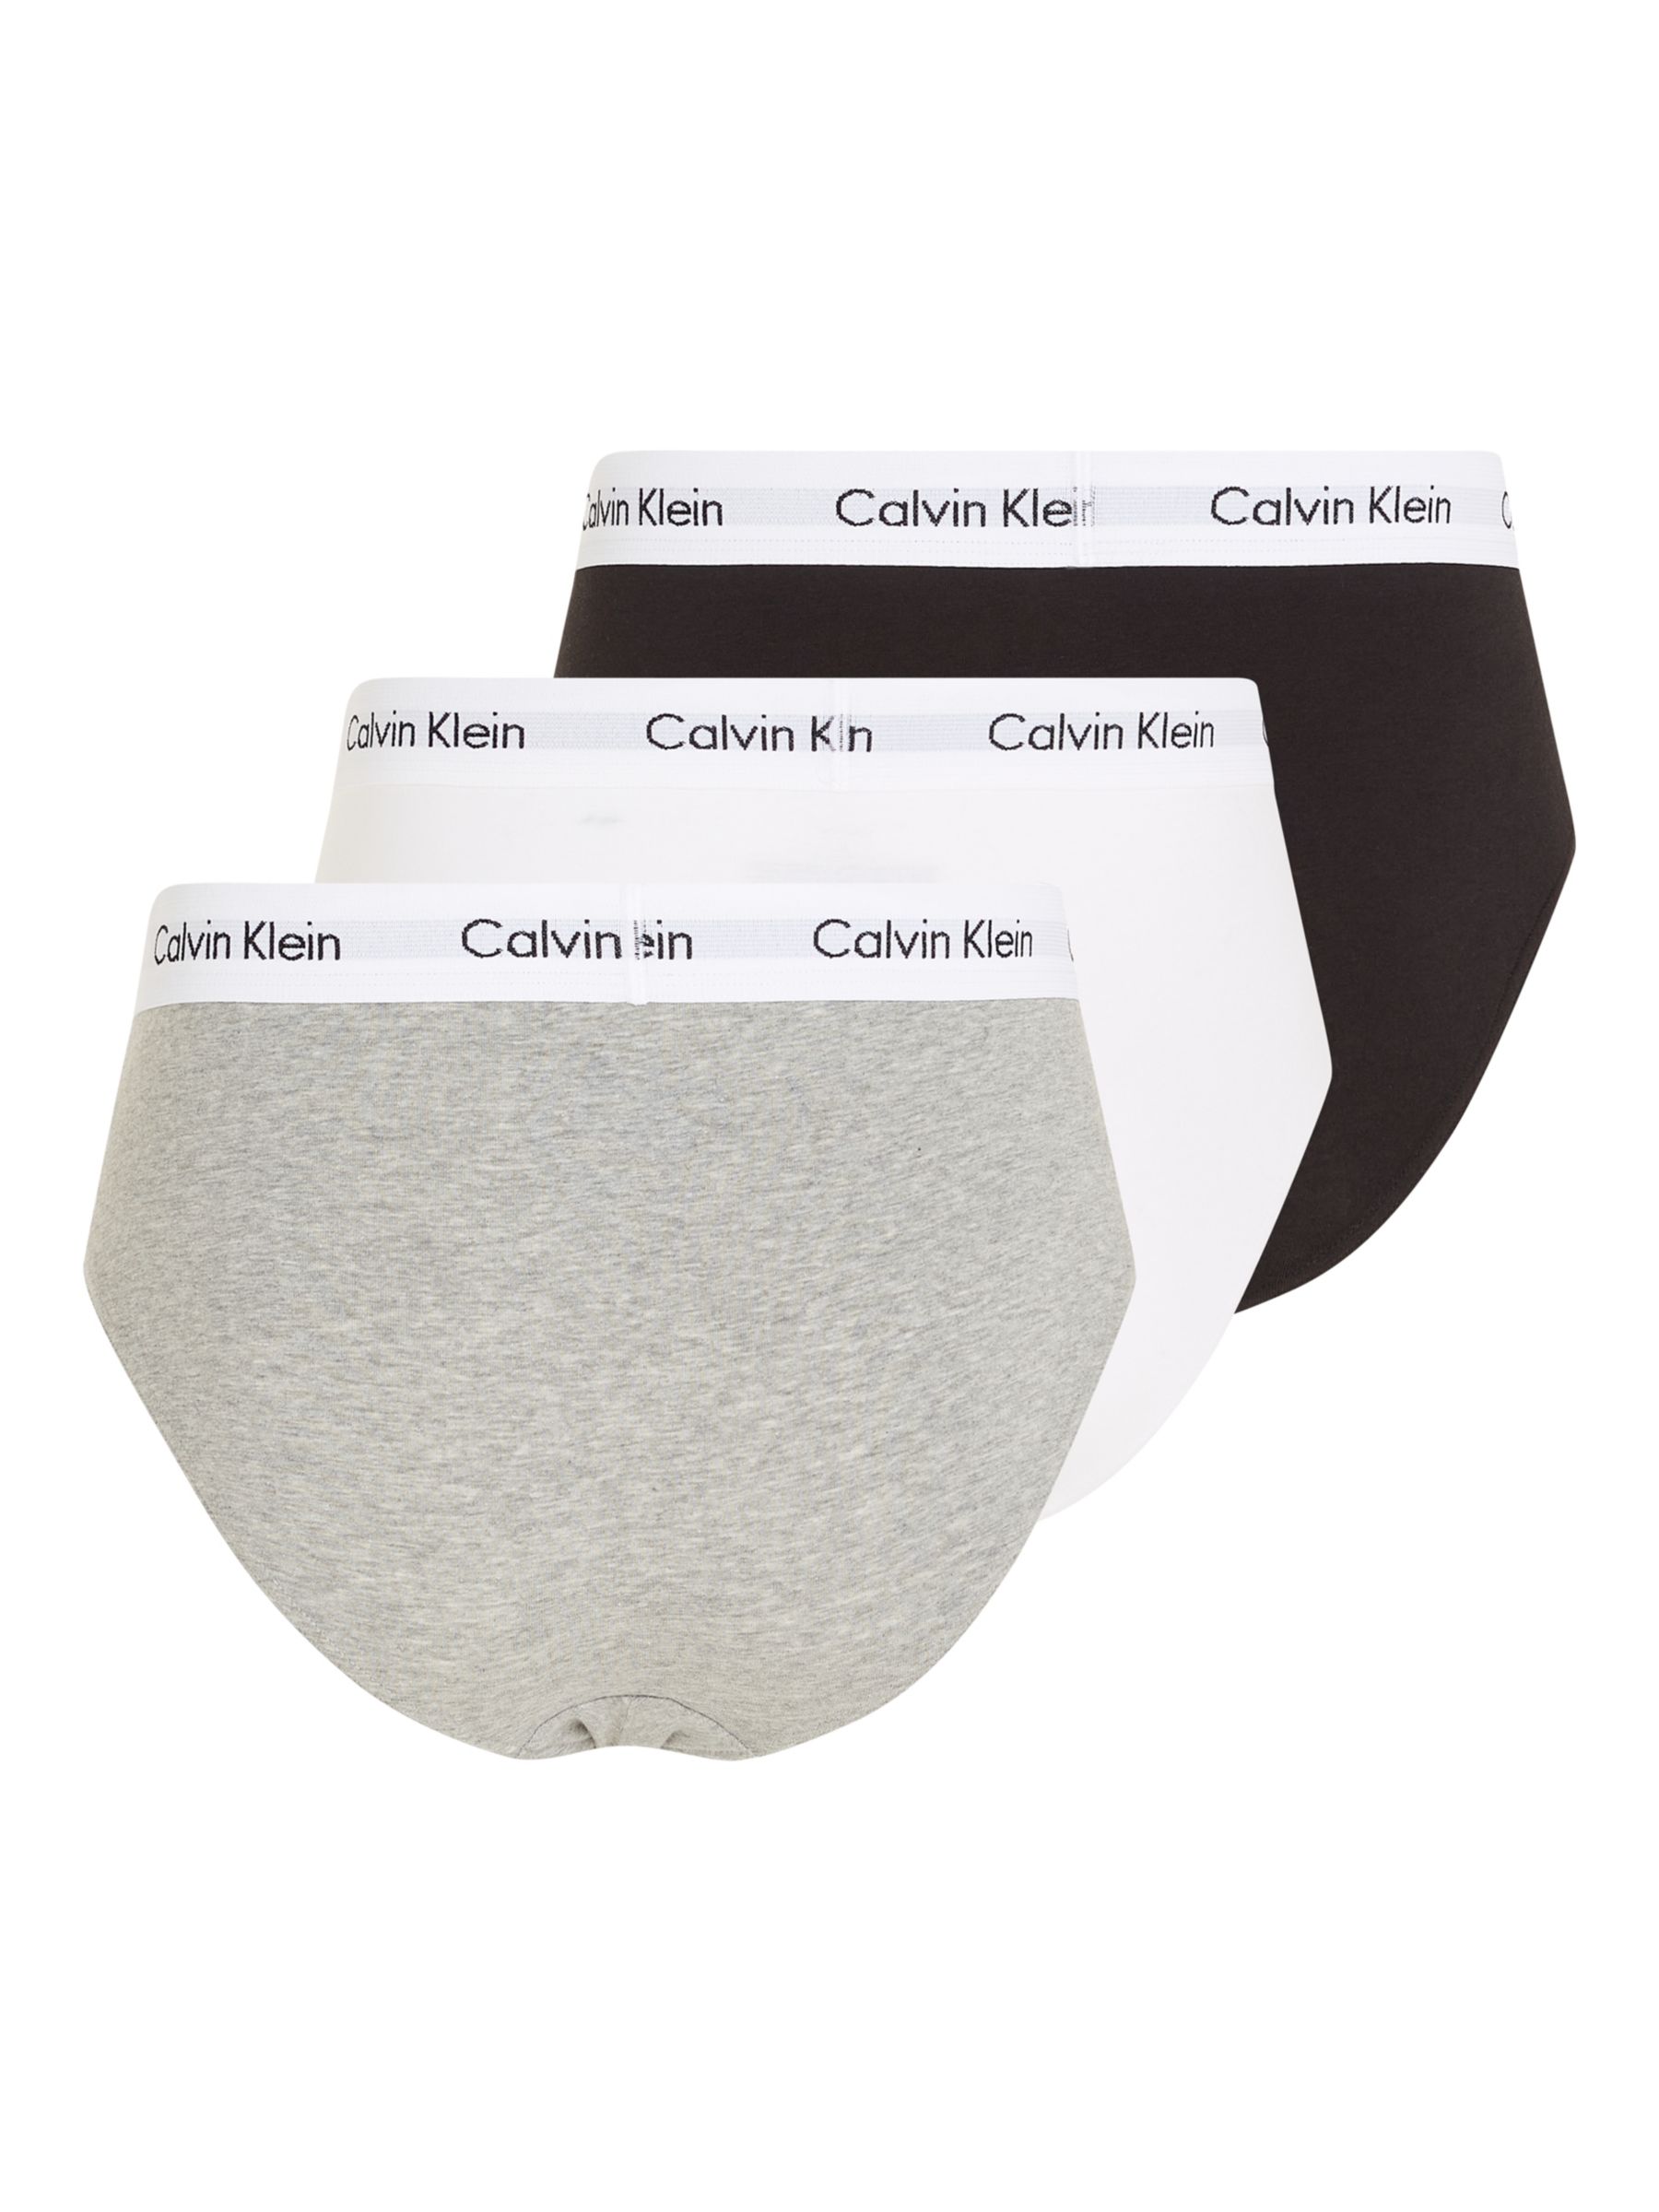 Calvin Klein Underwear Cotton Briefs, Pack of 3, Black/White/Grey, XS